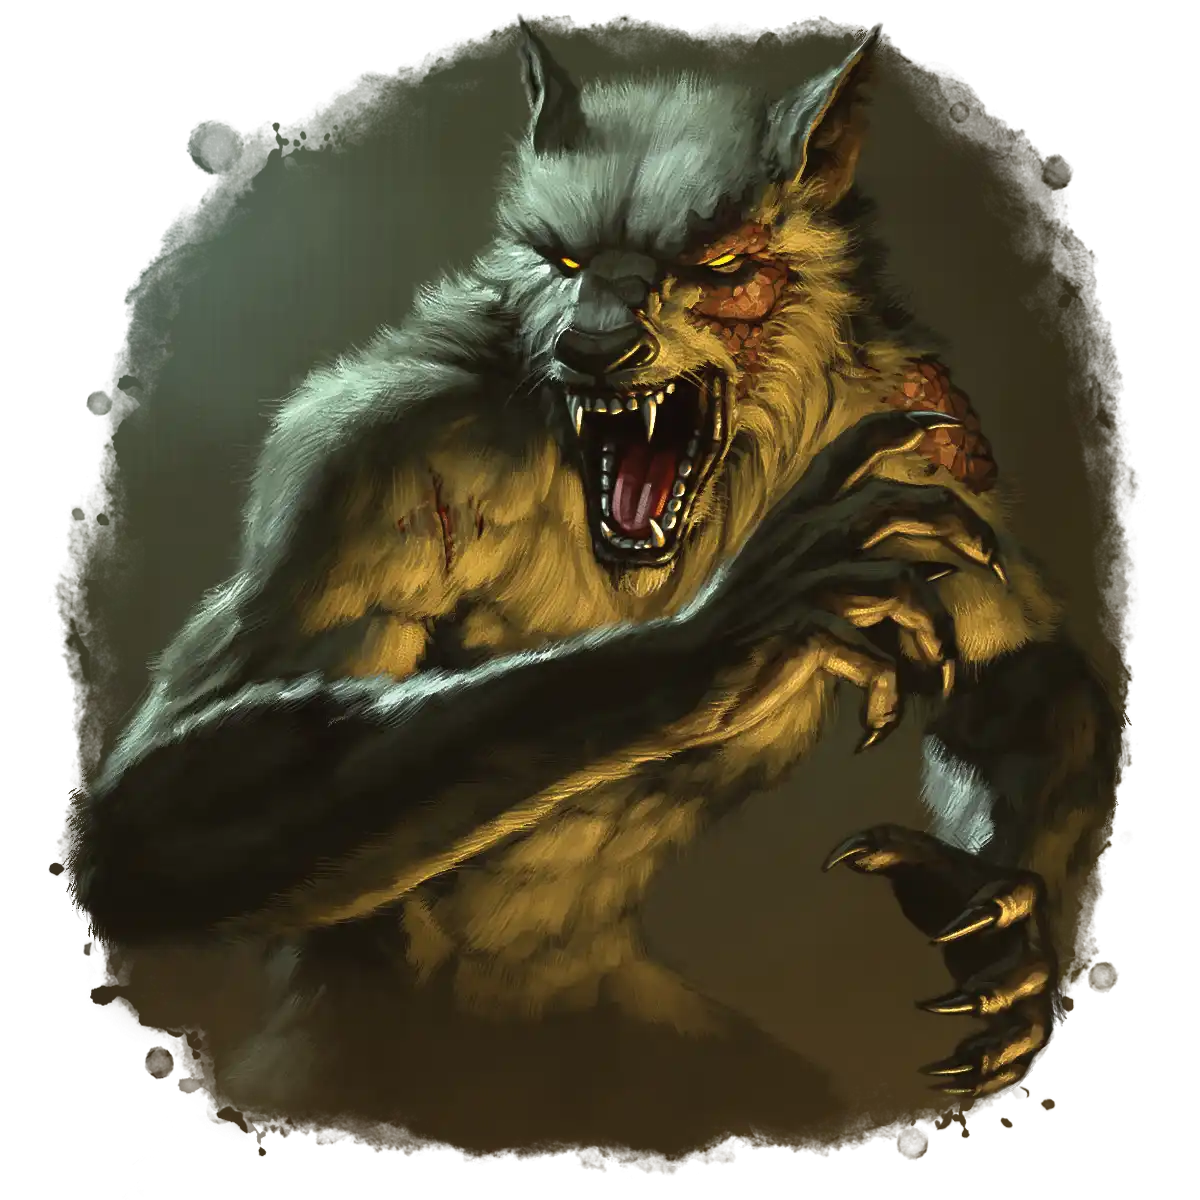 Werewolf with Skin Disease